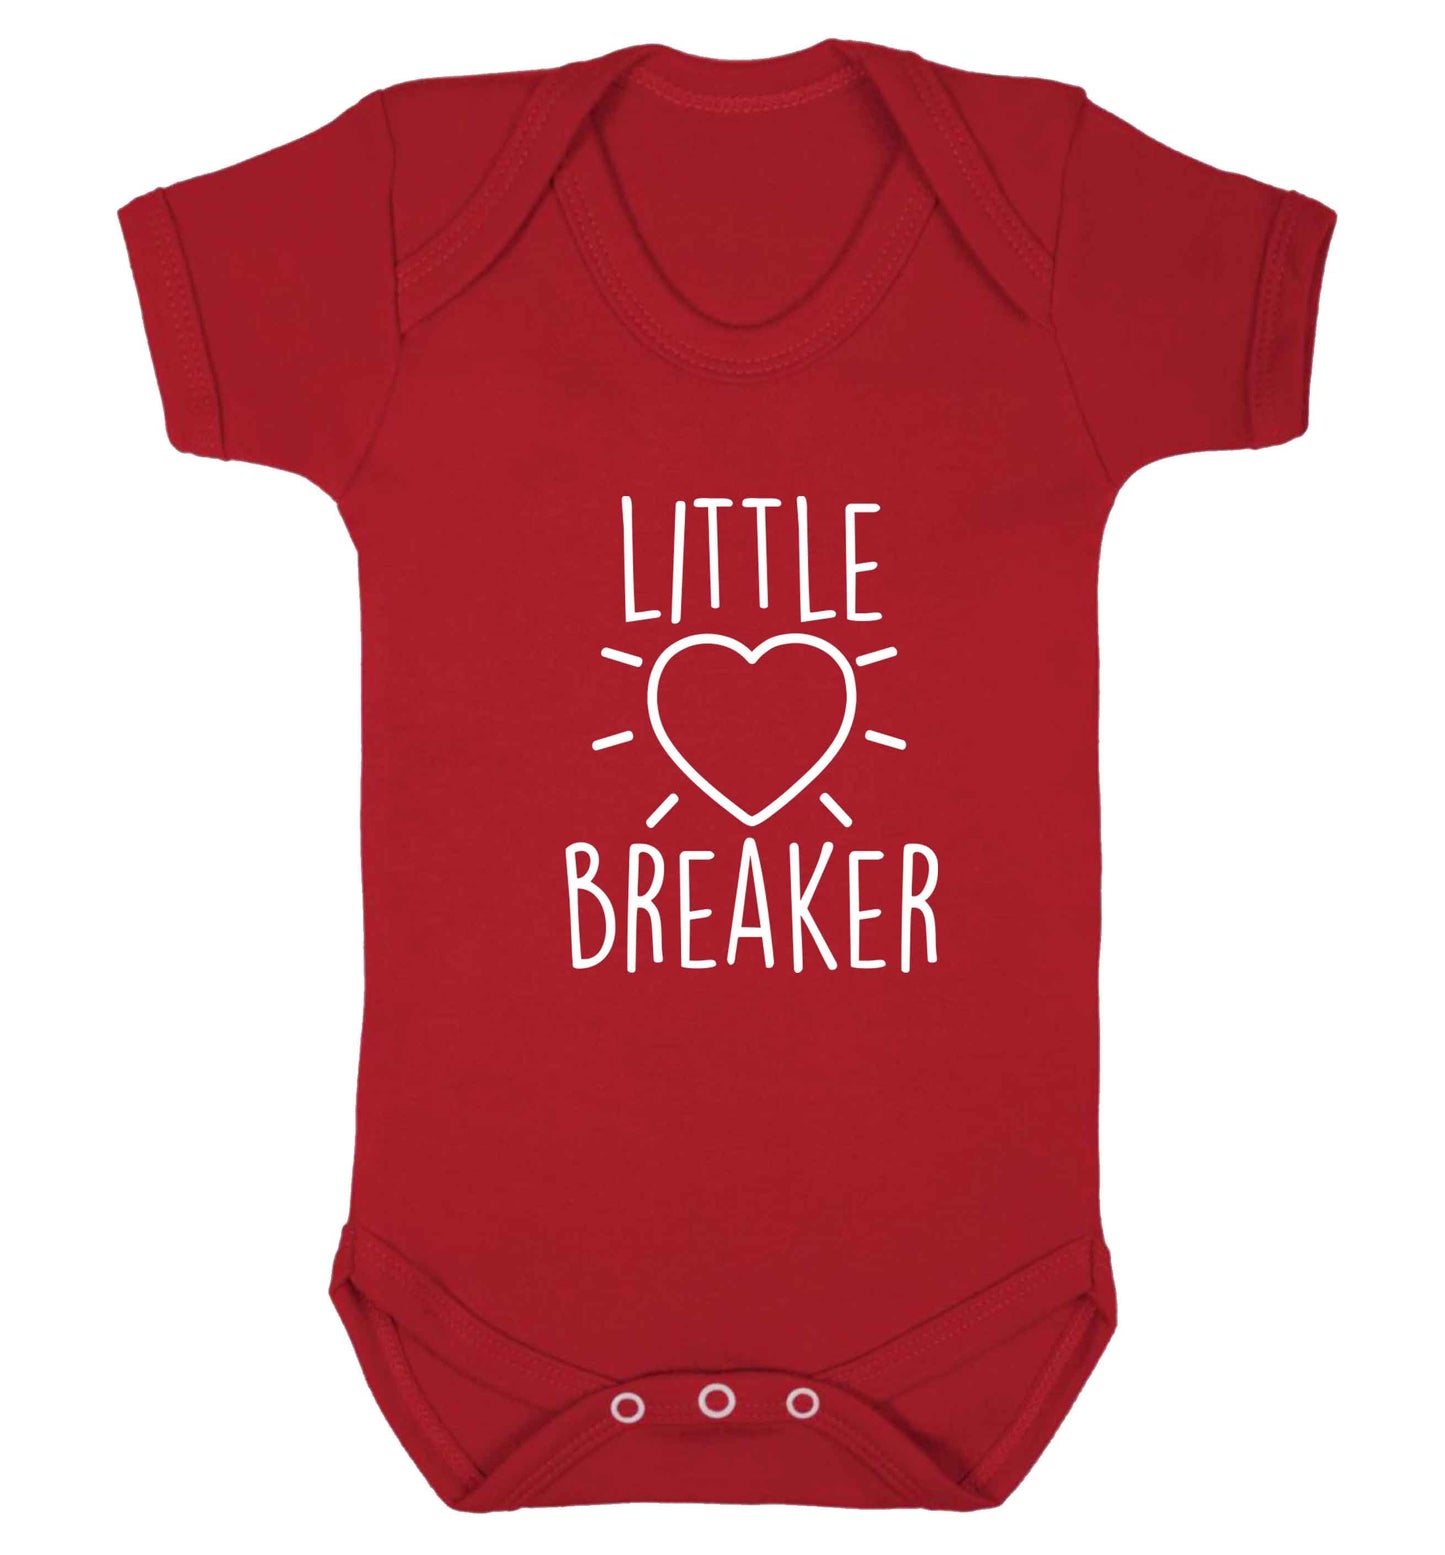 Little heartbreaker baby vest red 18-24 months